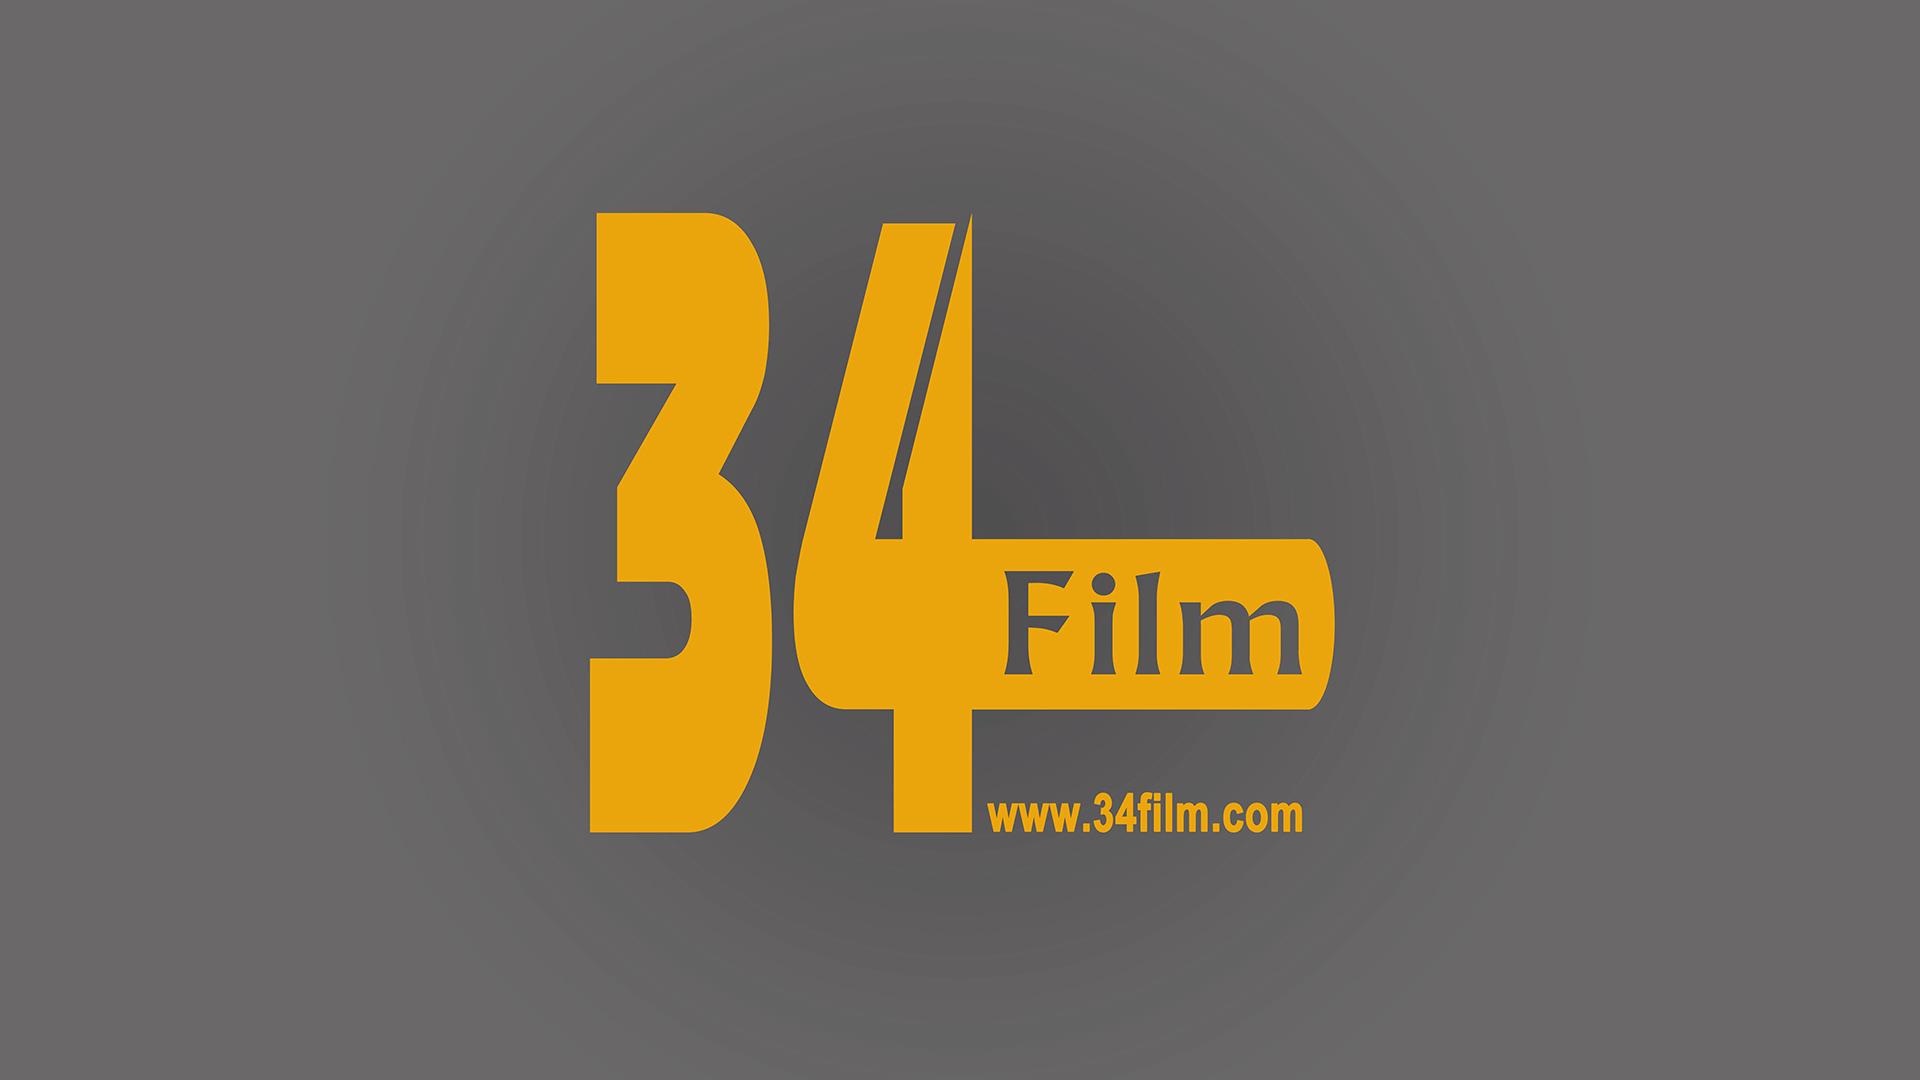 34 Film